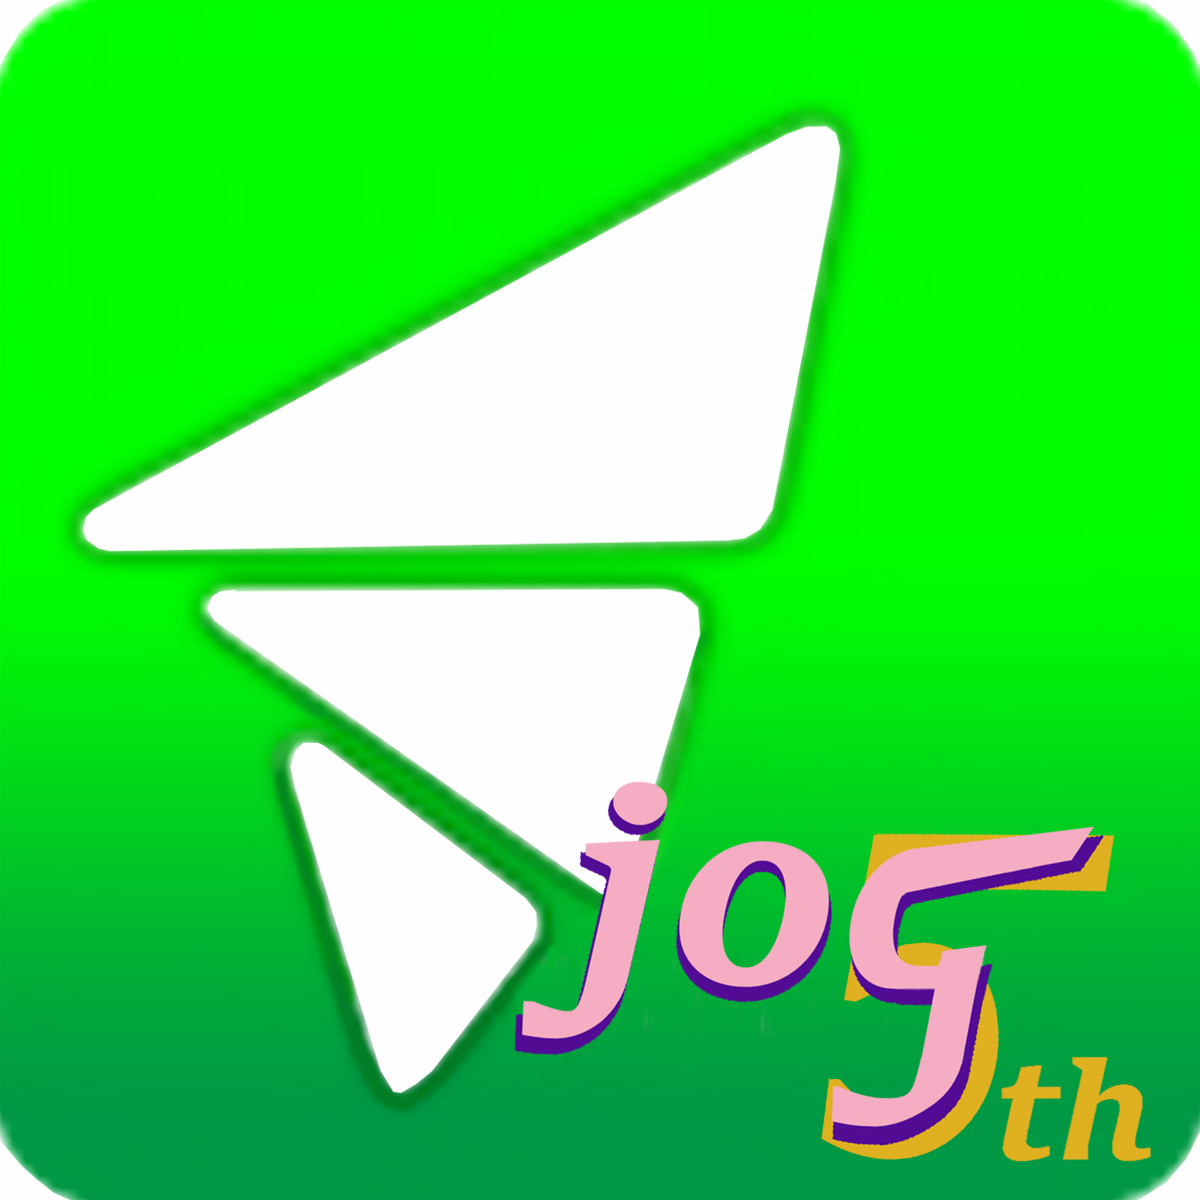 Annexe JOG 5th icon.jpg